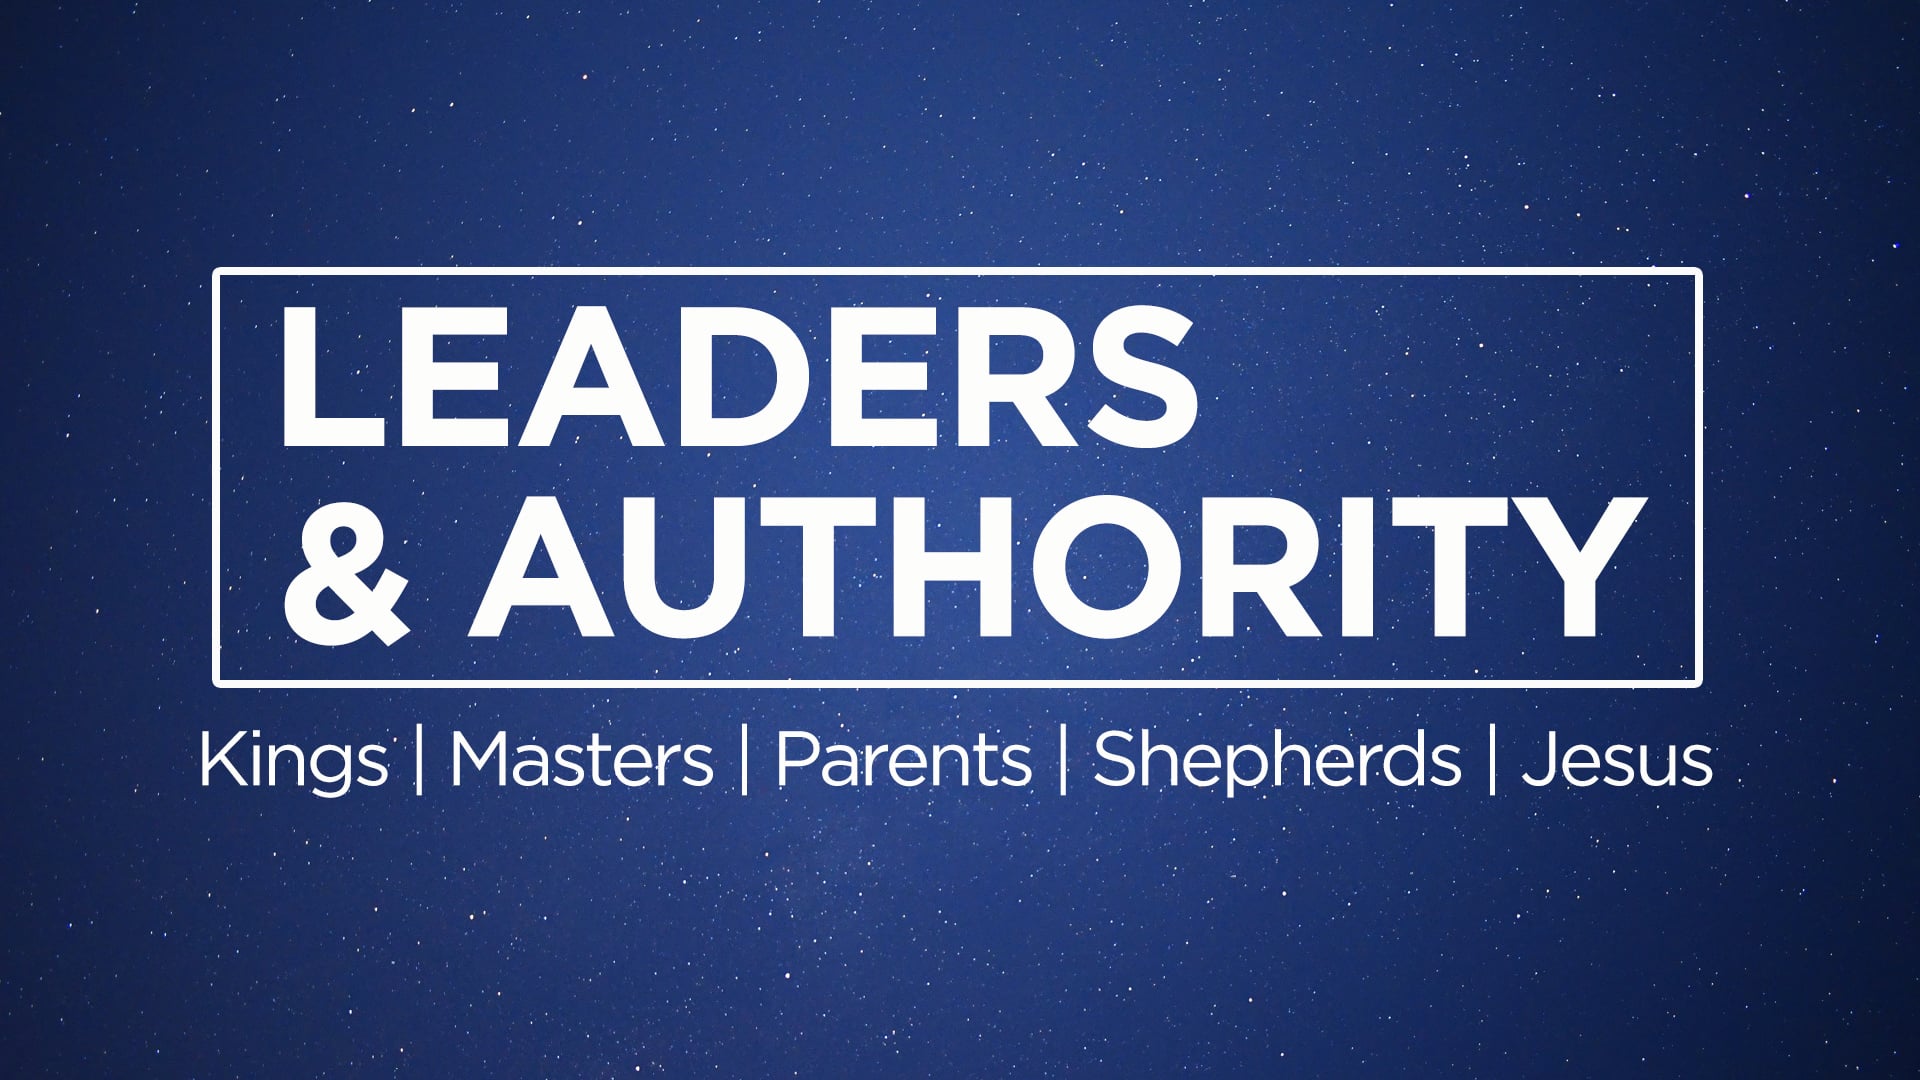 Leaders & Authority 1 - KINGS